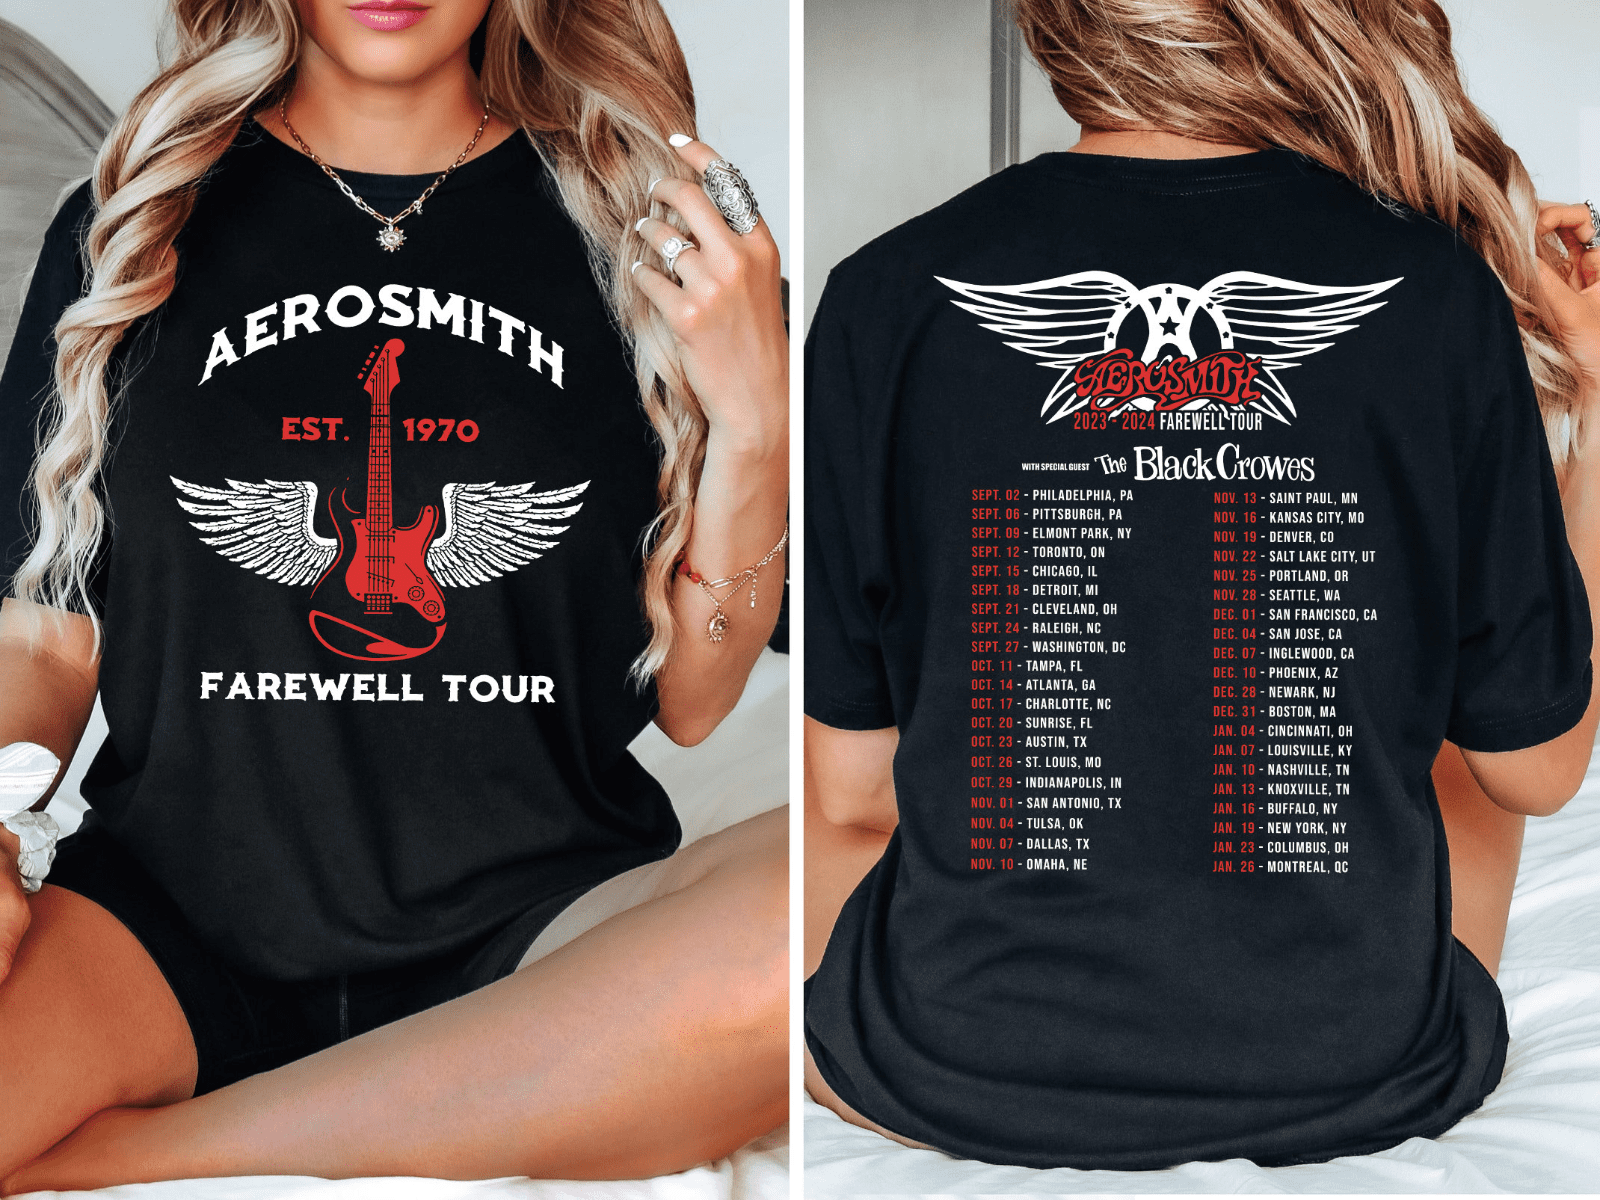 aerosmith farewell tour prices